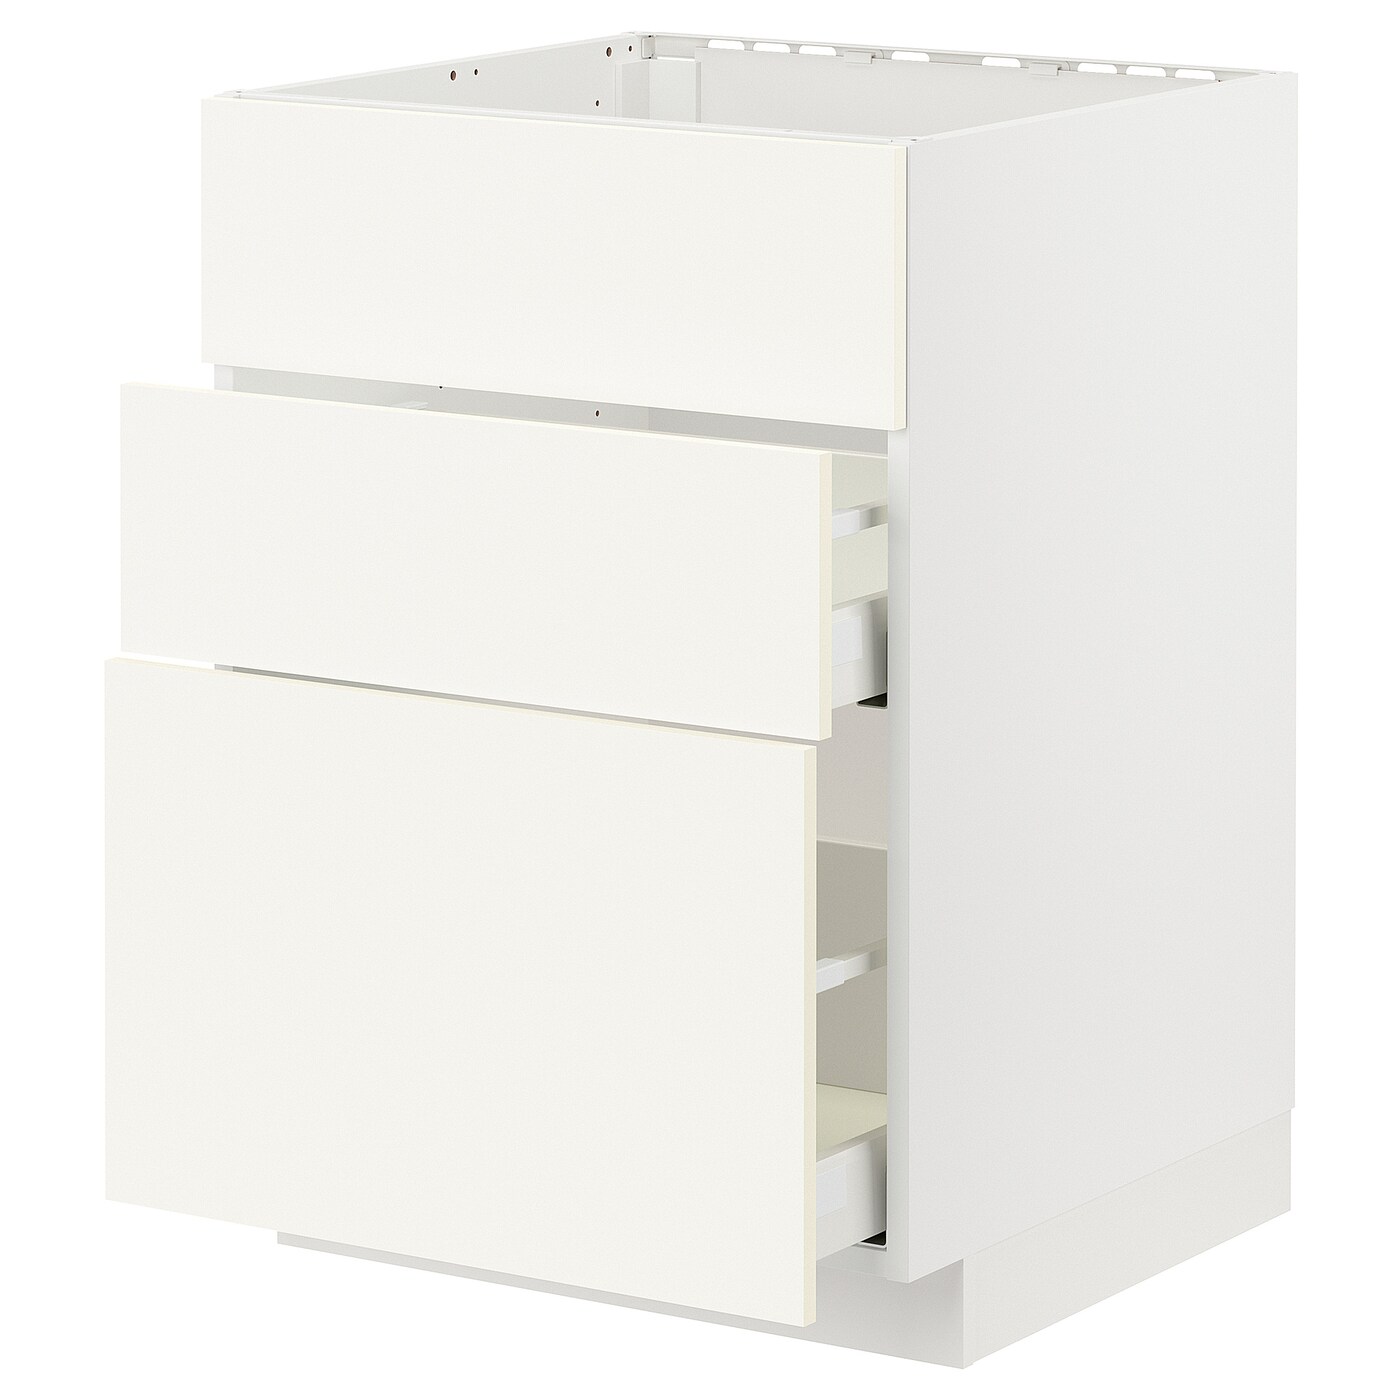 Напольный шкаф - IKEA METOD MAXIMERA, 80x62x80см, белый, МЕТОД МАКСИМЕРА ИКЕА